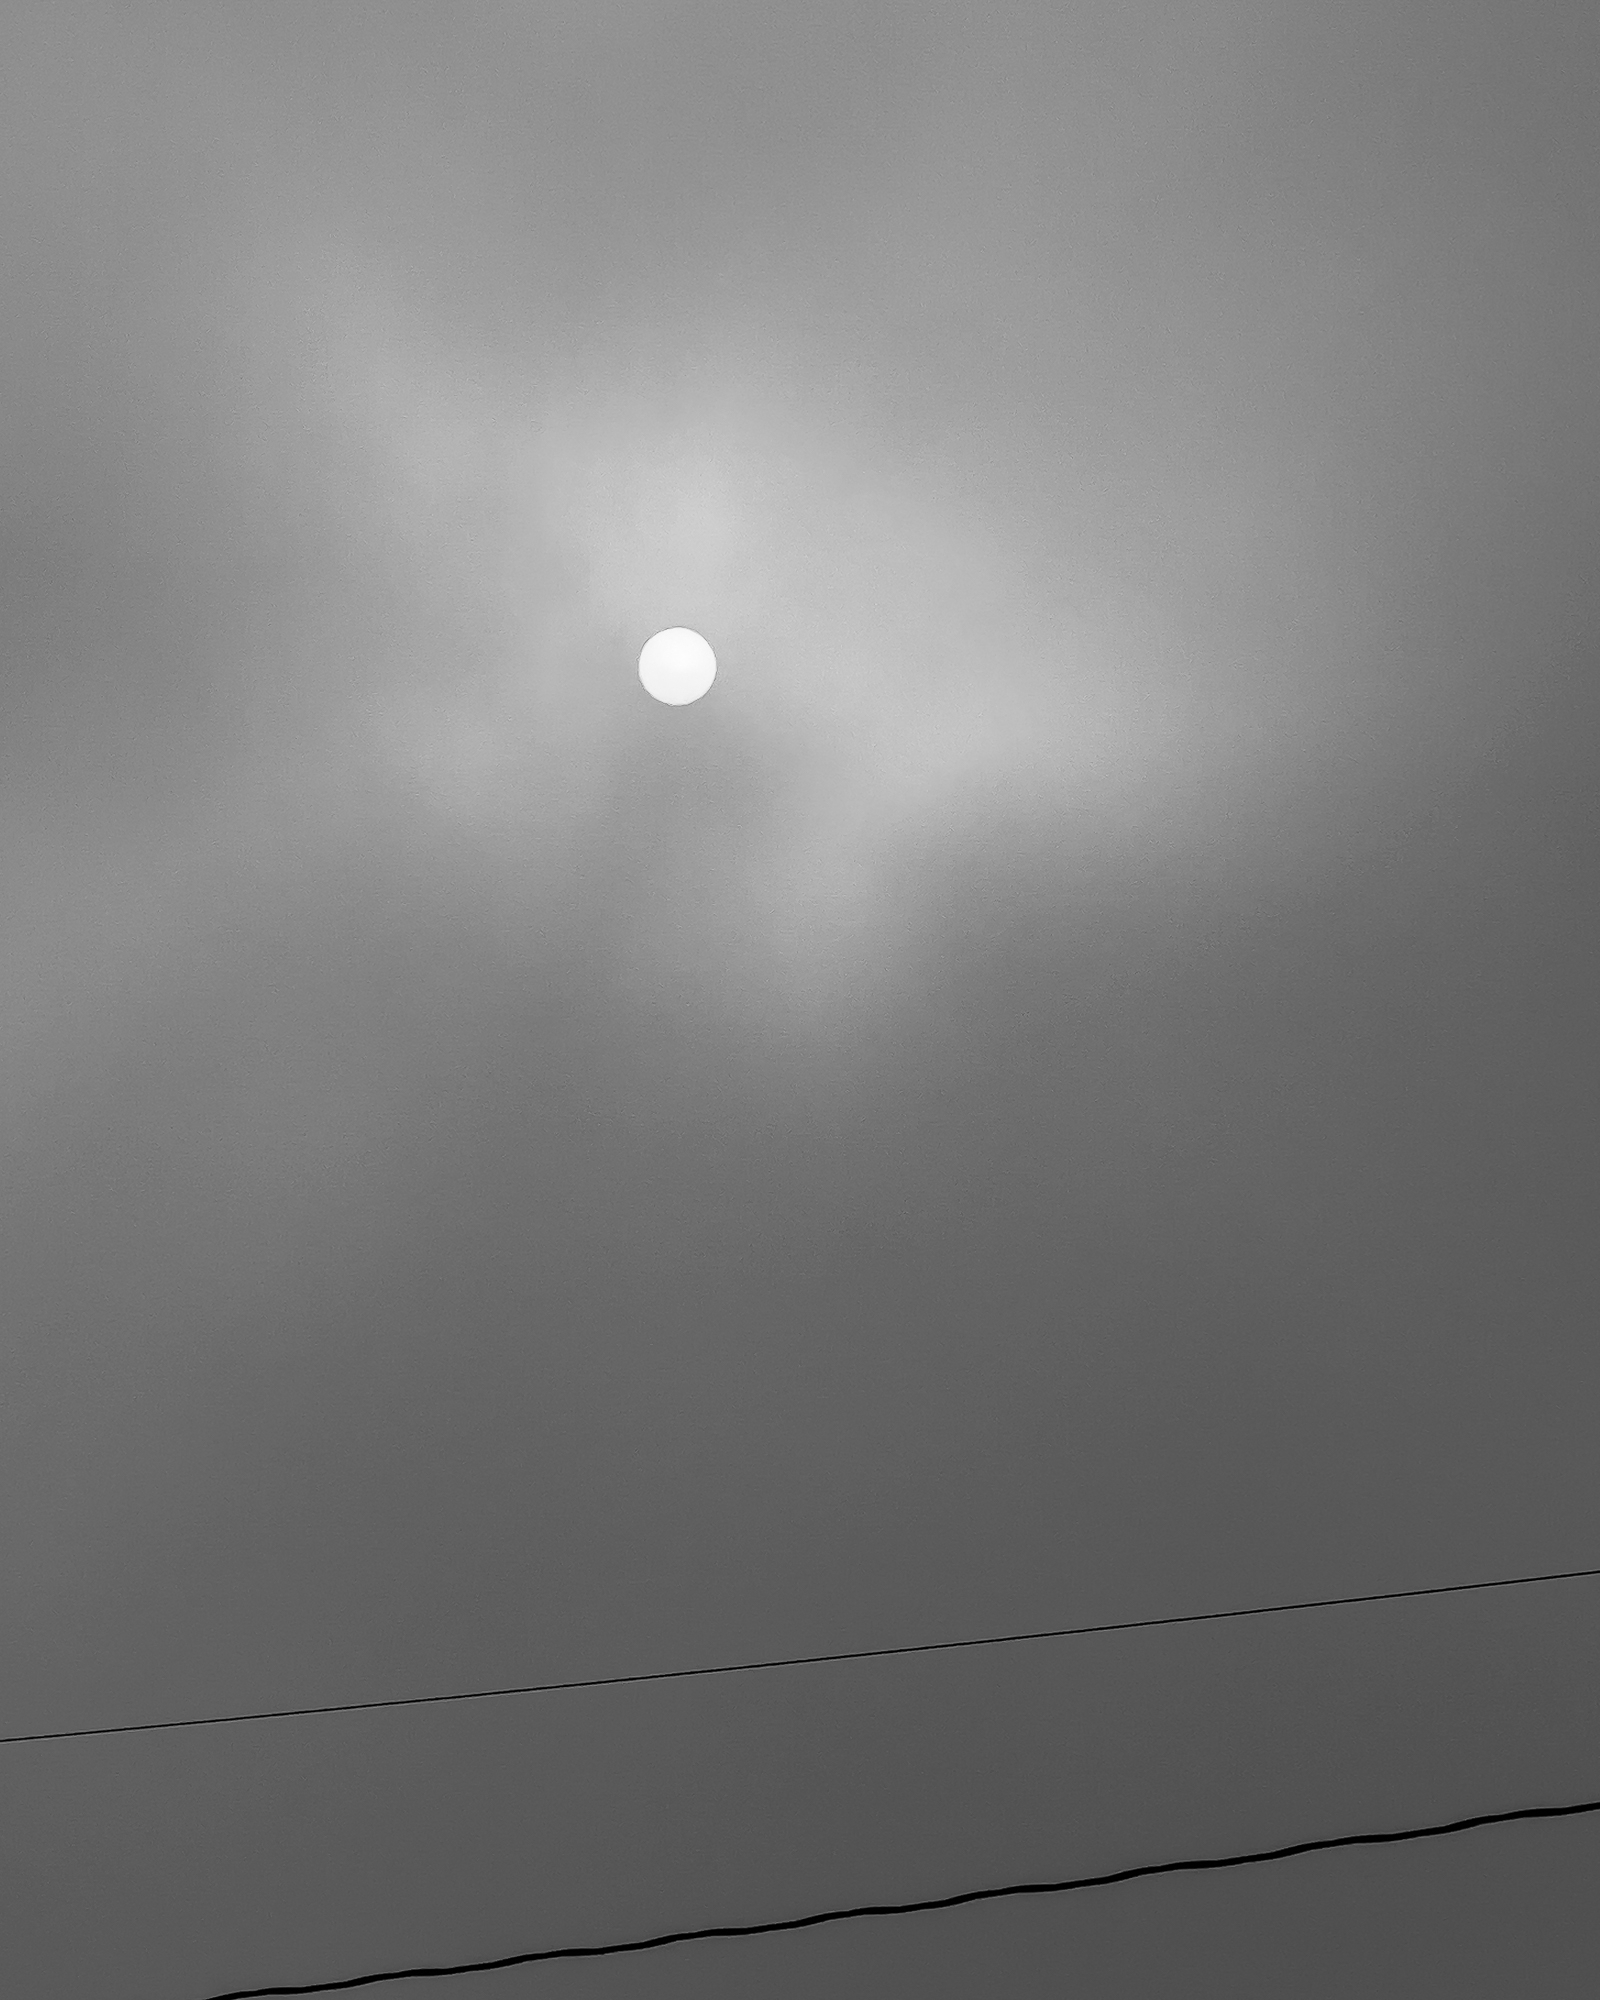 the sun in a cloudy sky